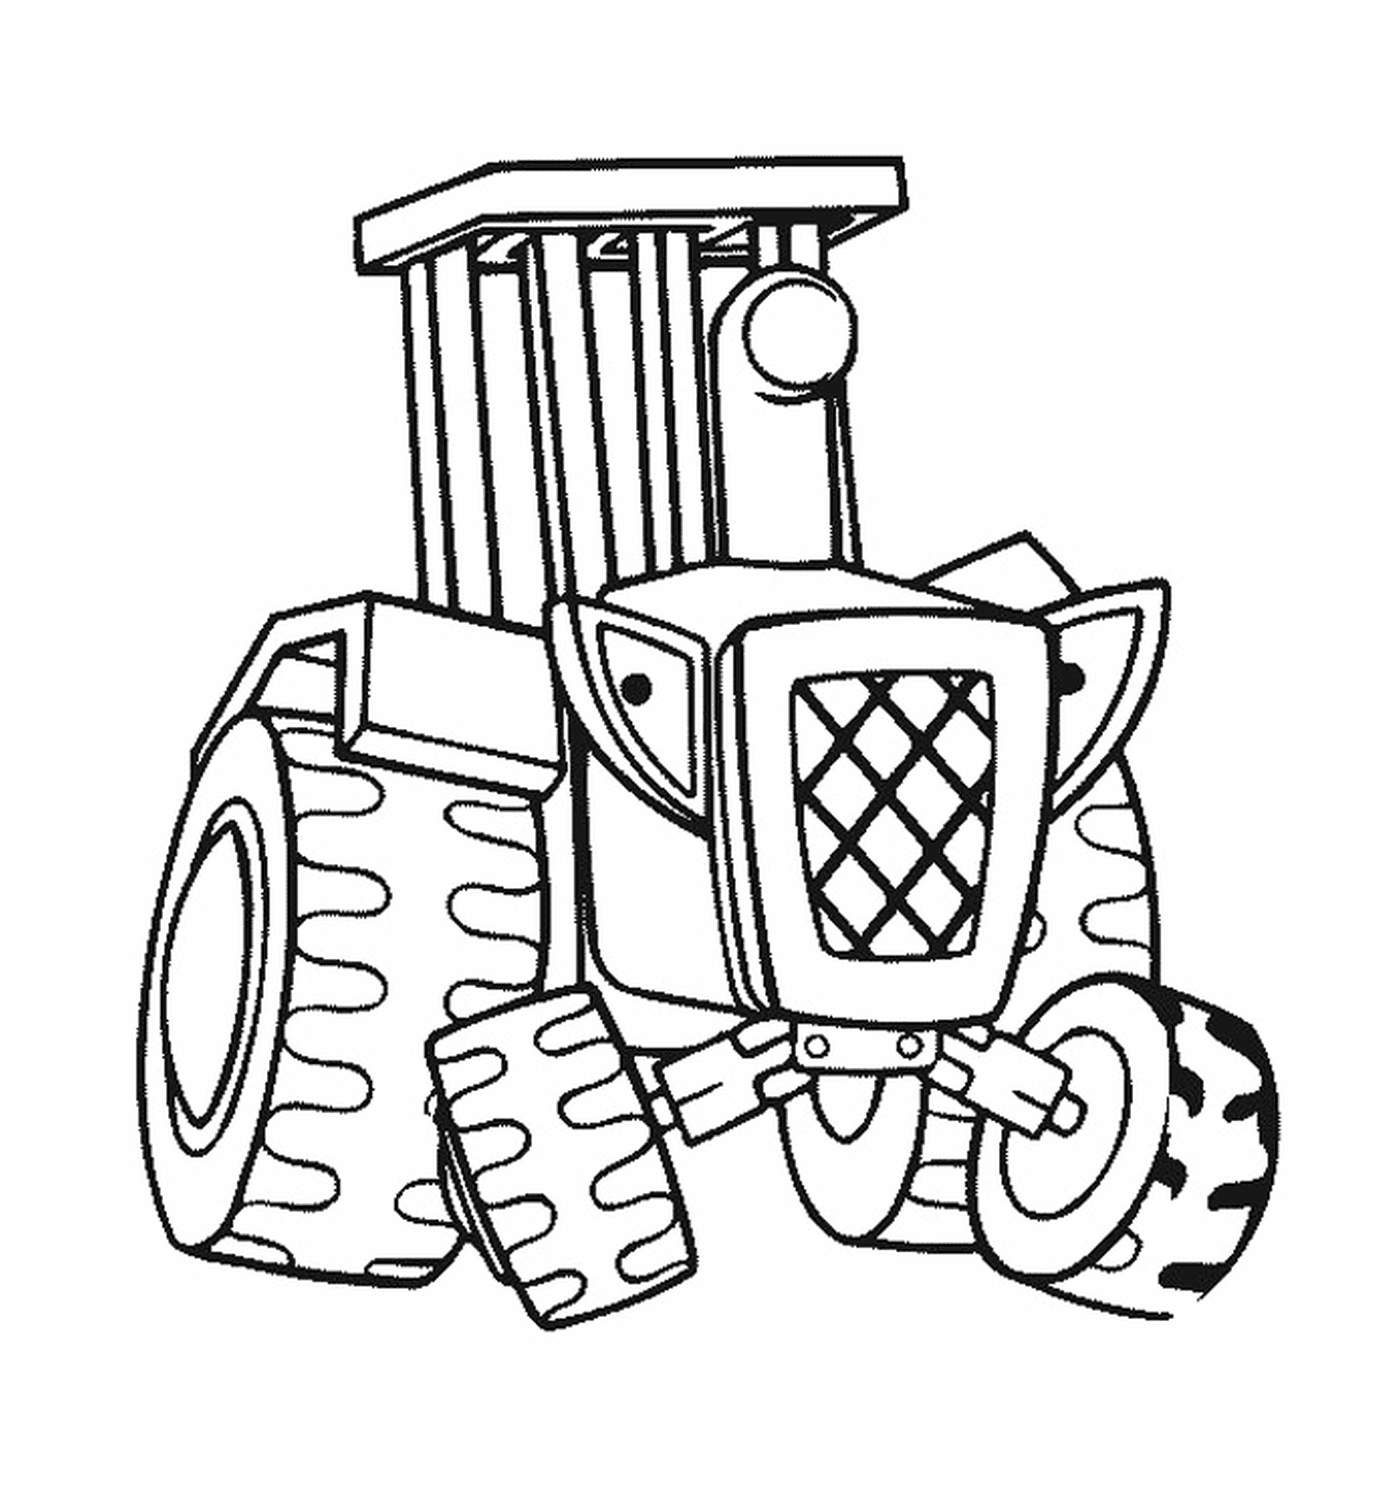   Un tracteur représenté dans un dessin 